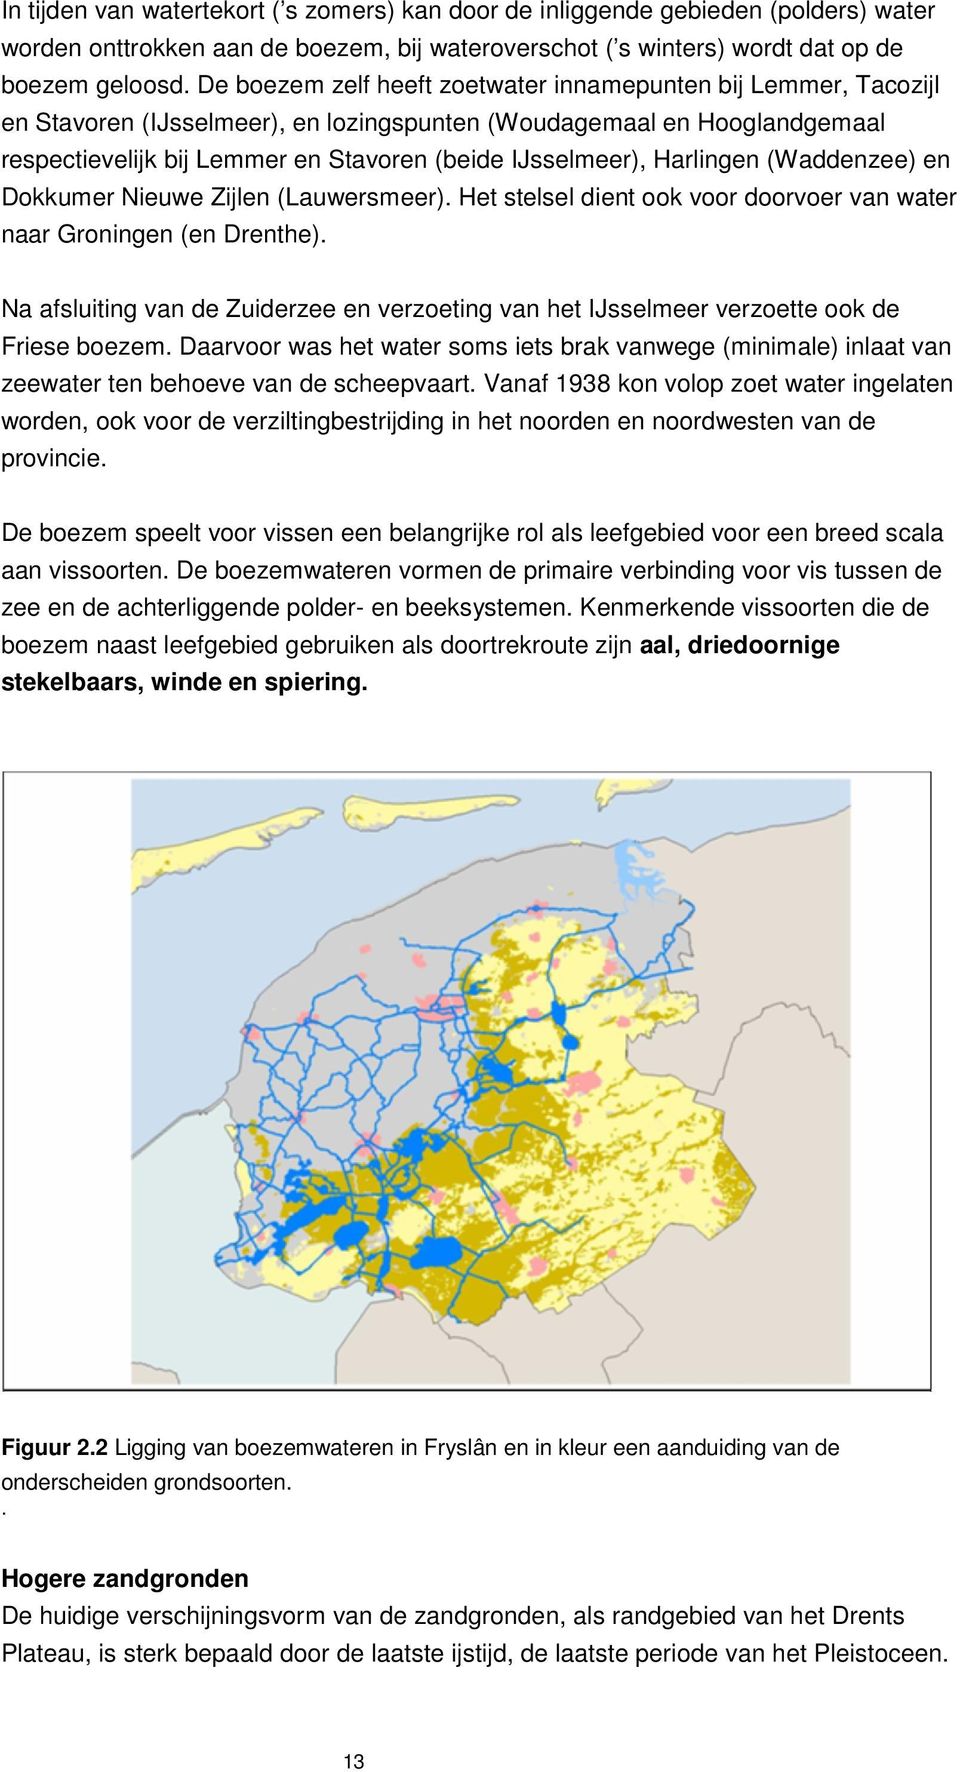 Harlingen (Waddenzee) en Dokkumer Nieuwe Zijlen (Lauwersmeer). Het stelsel dient ook voor doorvoer van water naar Groningen (en Drenthe).